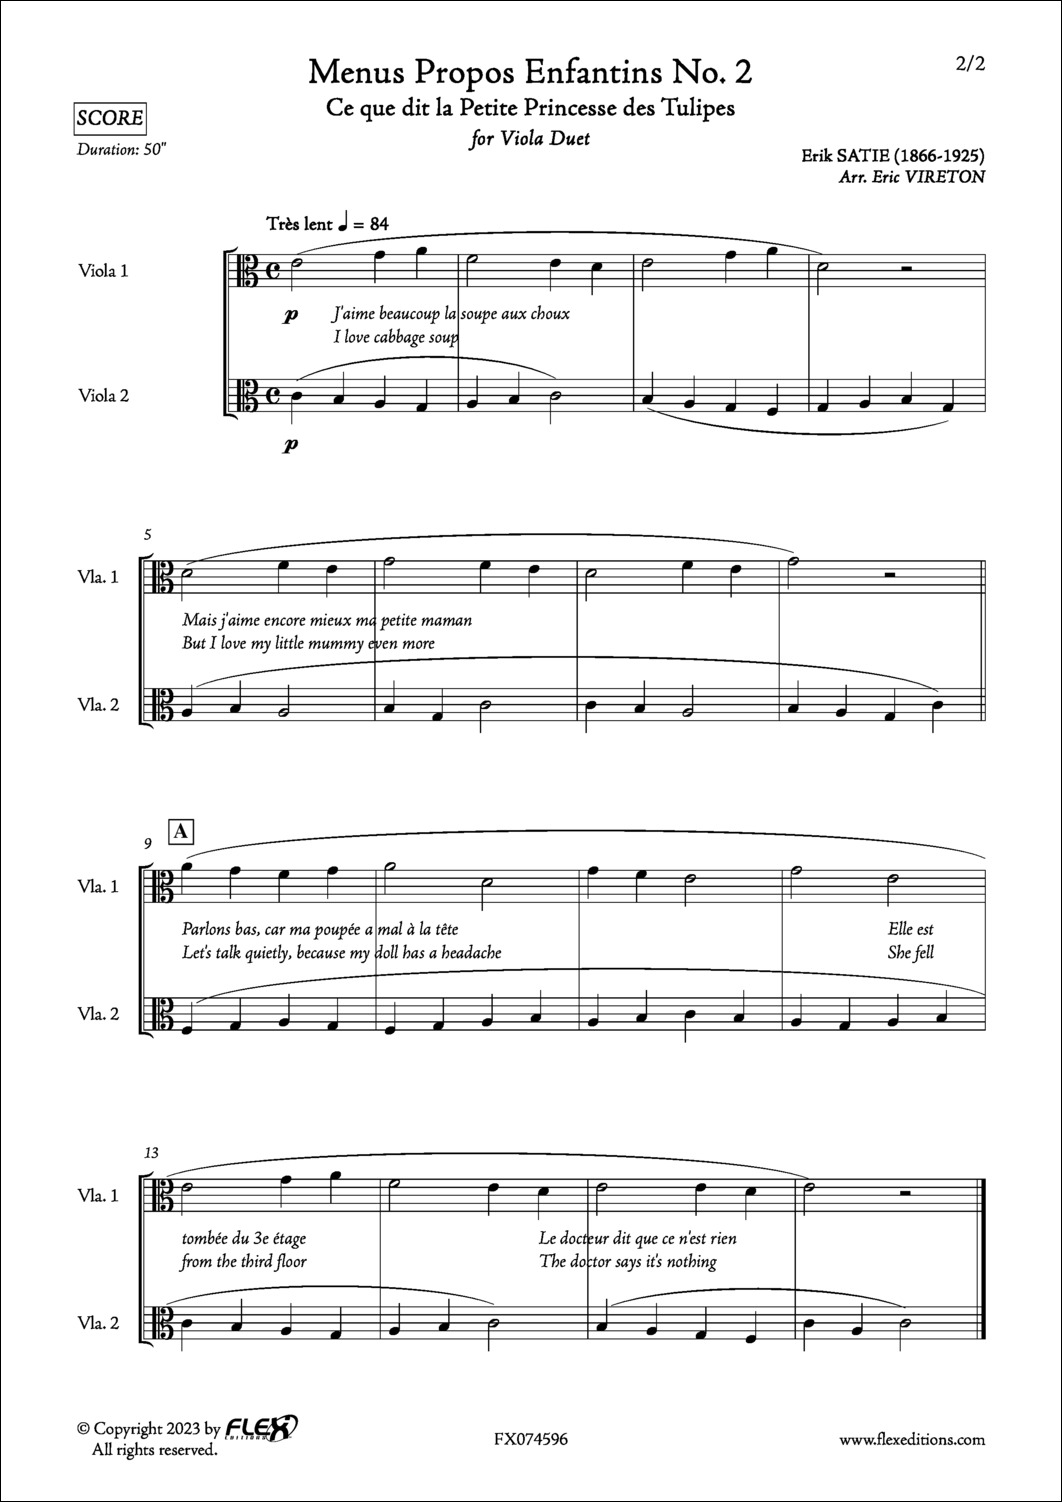 Menus Propos Enfantins No. 2 - E. SATIE - <font color=#666666>Viola Duet</font>